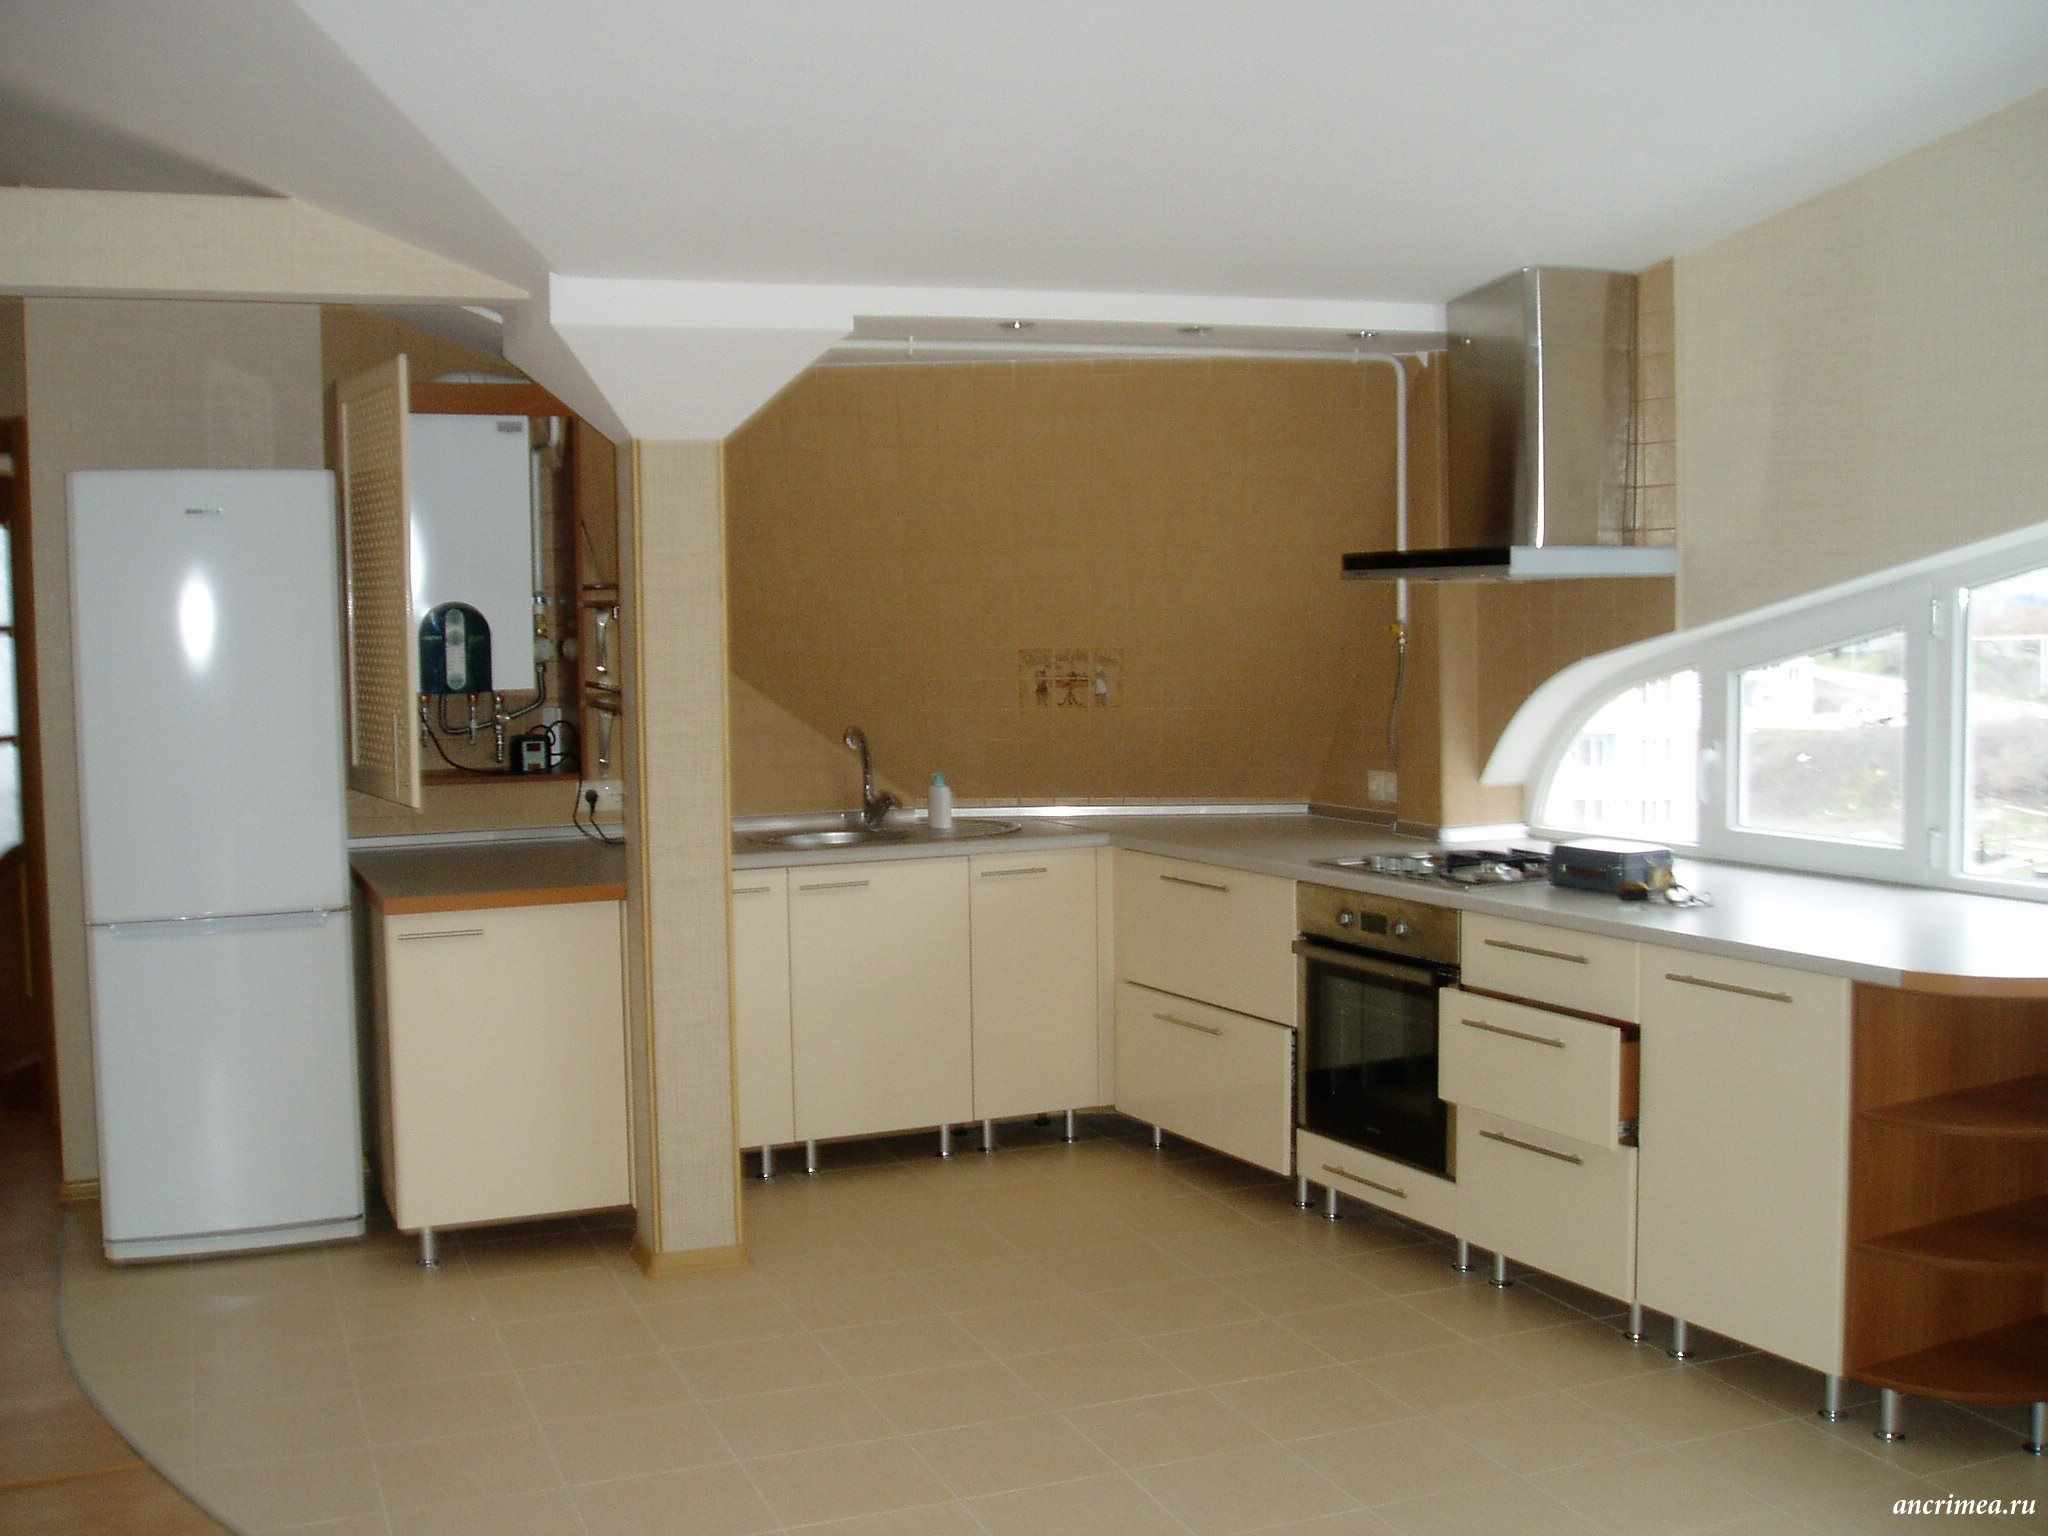 Šviesaus stiliaus virtuvės su dujiniu katilu pavyzdys